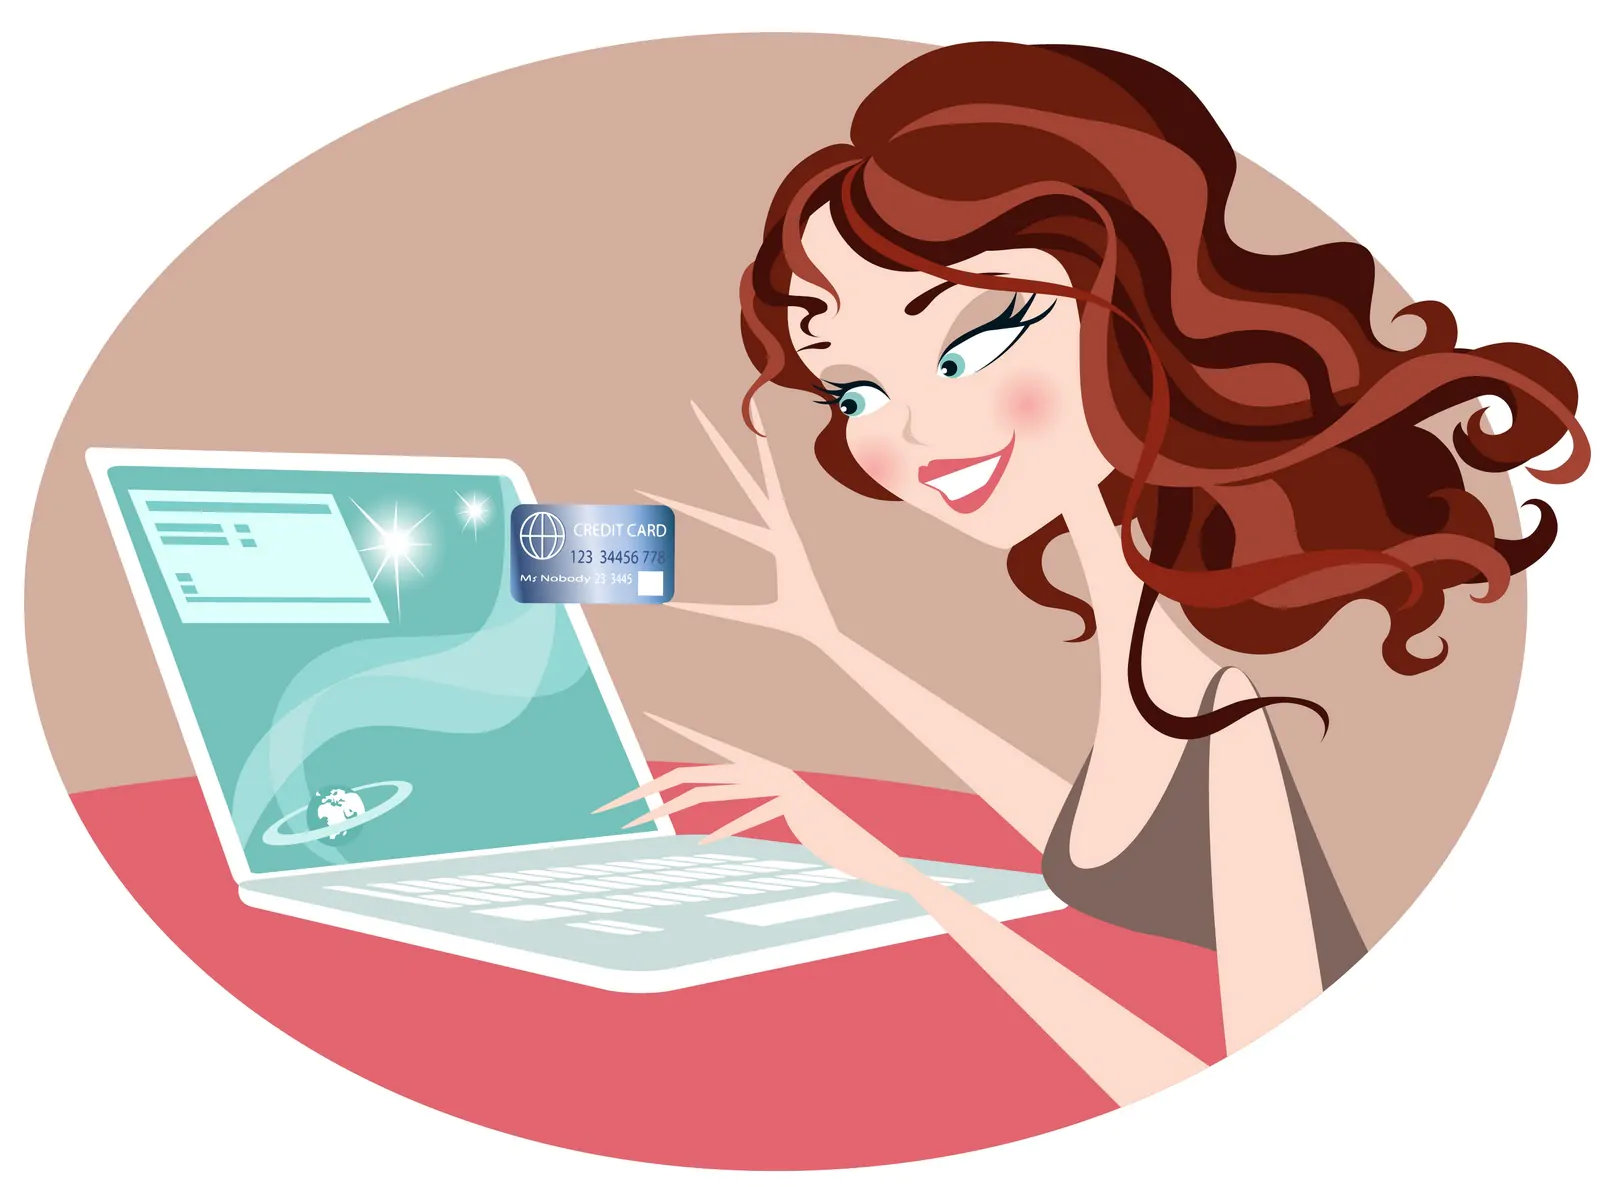 Online shopping girl illustration